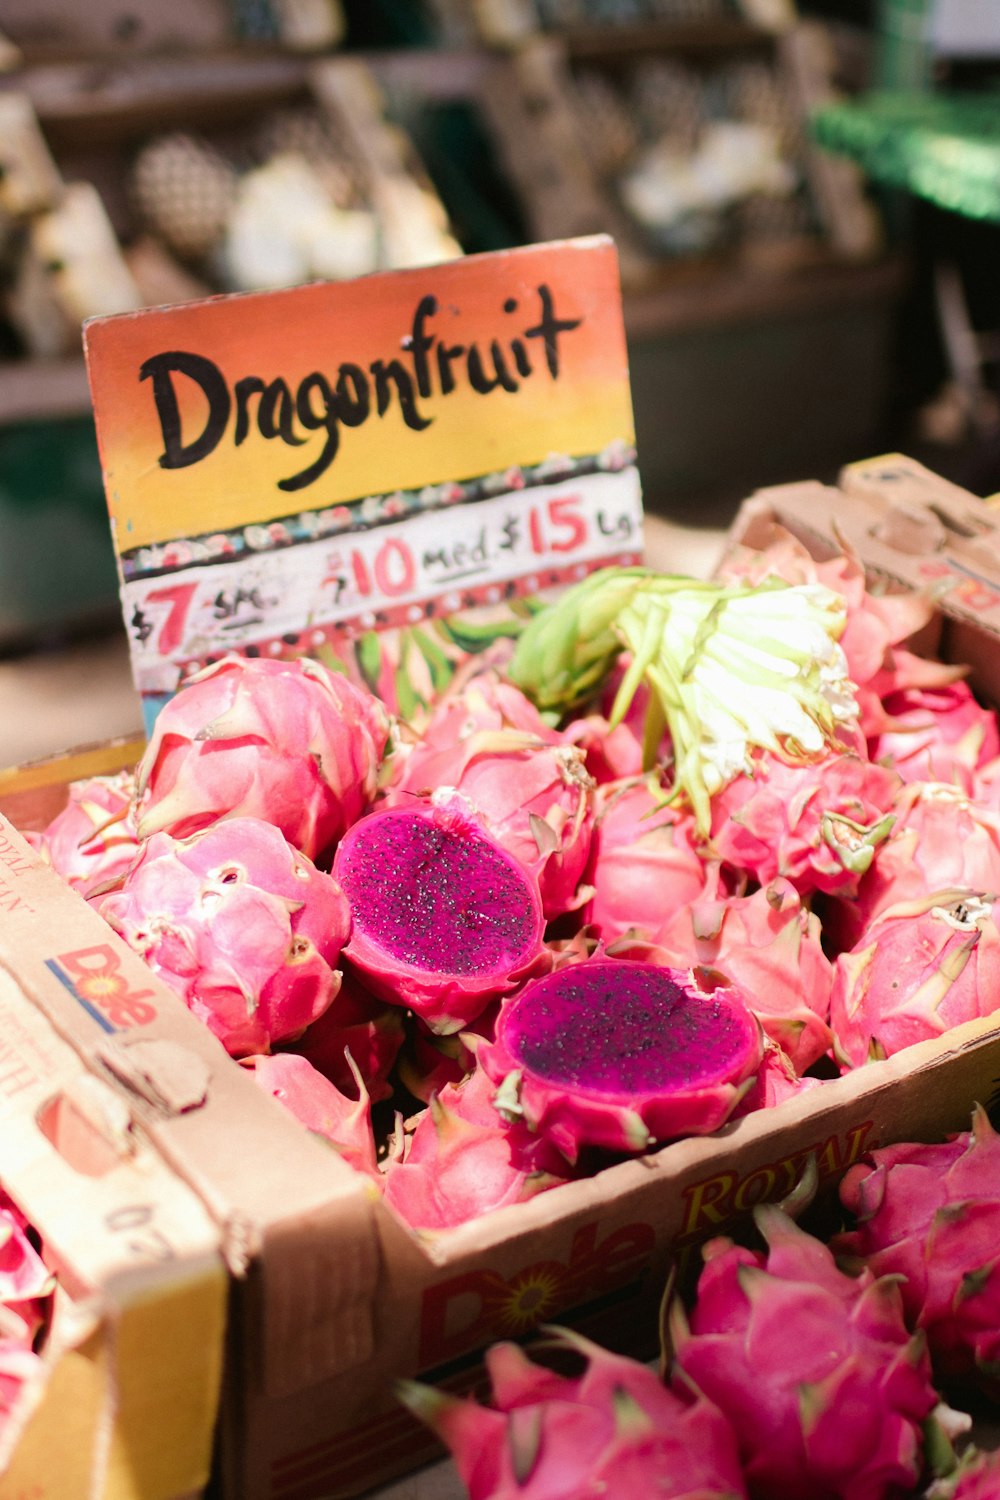 Dragon fruit signage